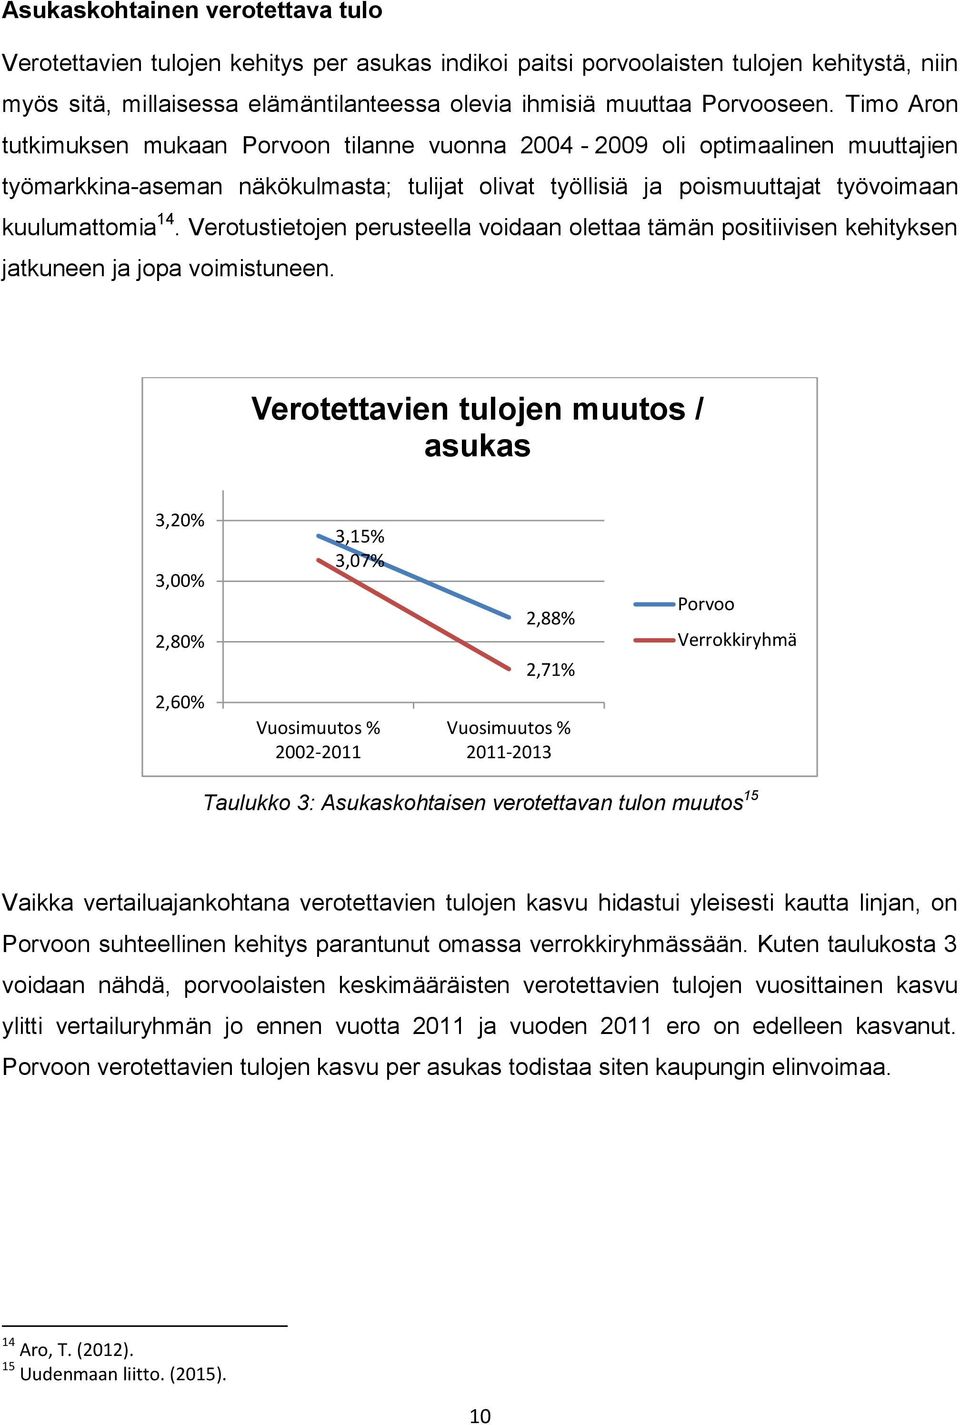 Timo Aron tutkimuksen mukaan Porvoon tilanne vuonna 2004-2009 oli optimaalinen muuttajien työmarkkina-aseman näkökulmasta; tulijat olivat työllisiä ja poismuuttajat työvoimaan kuulumattomia 14.